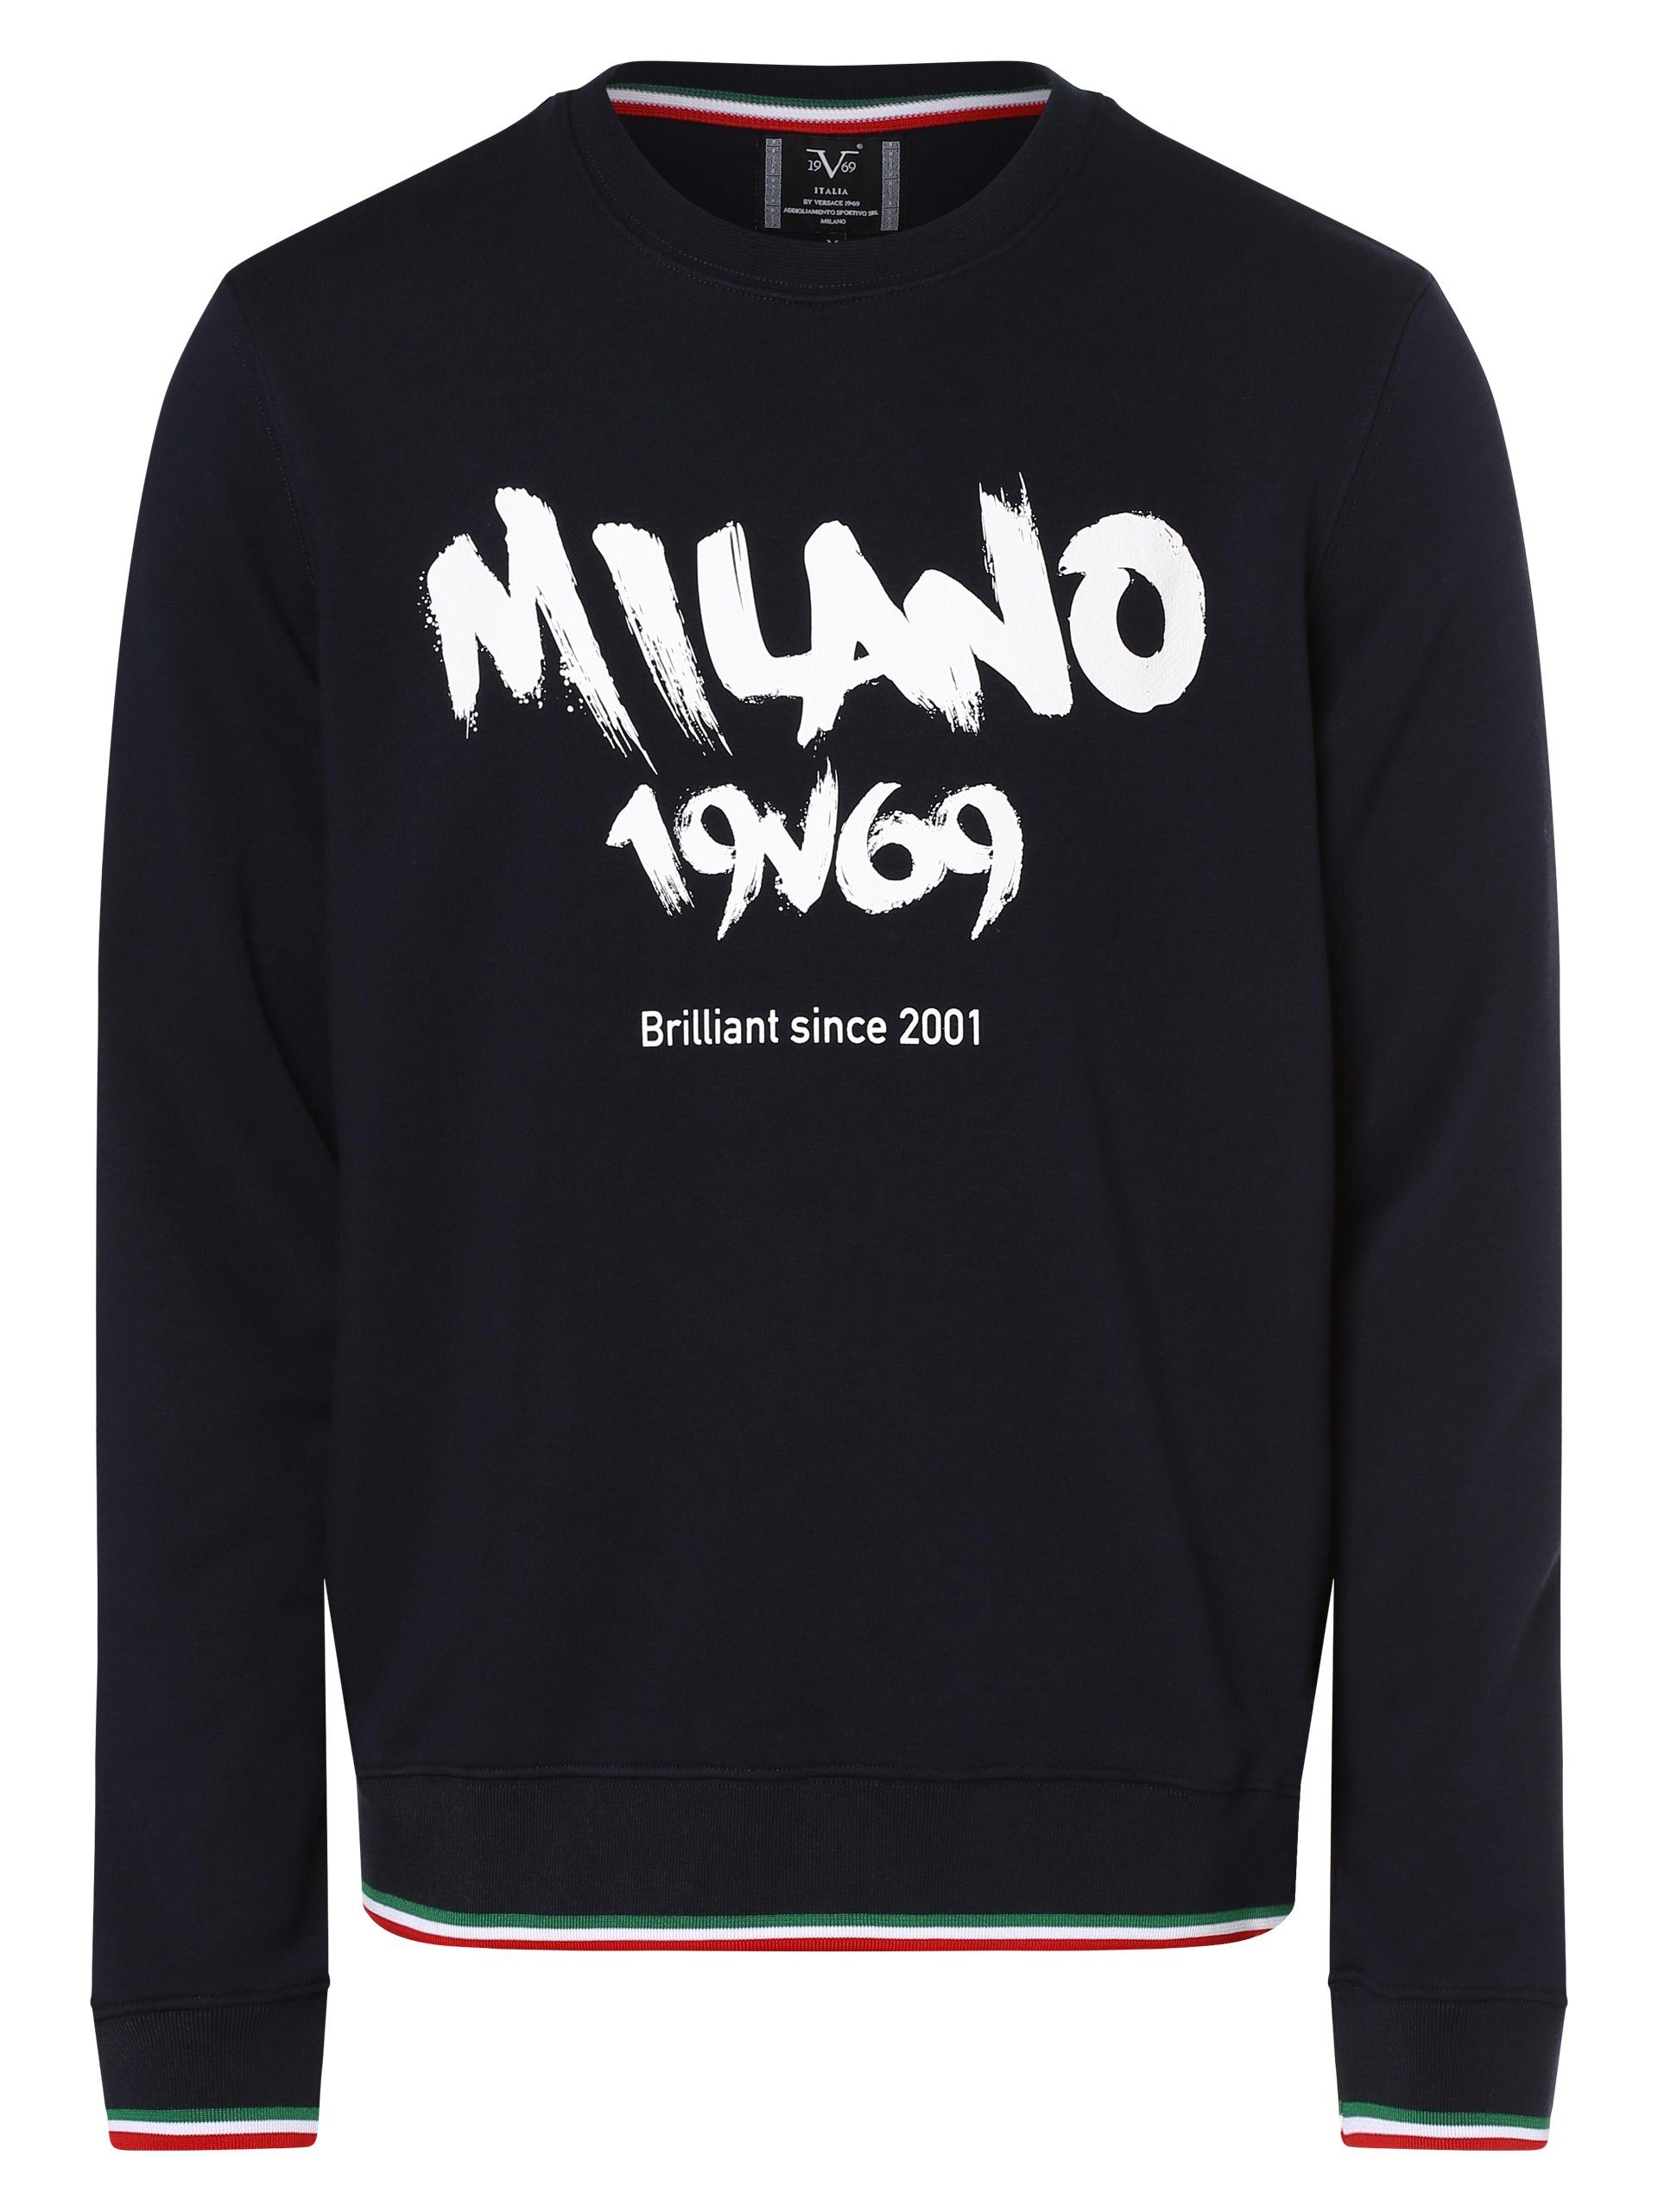 Sweatshirt Italia Ernesto Italia 19V69 19V69 Versace by